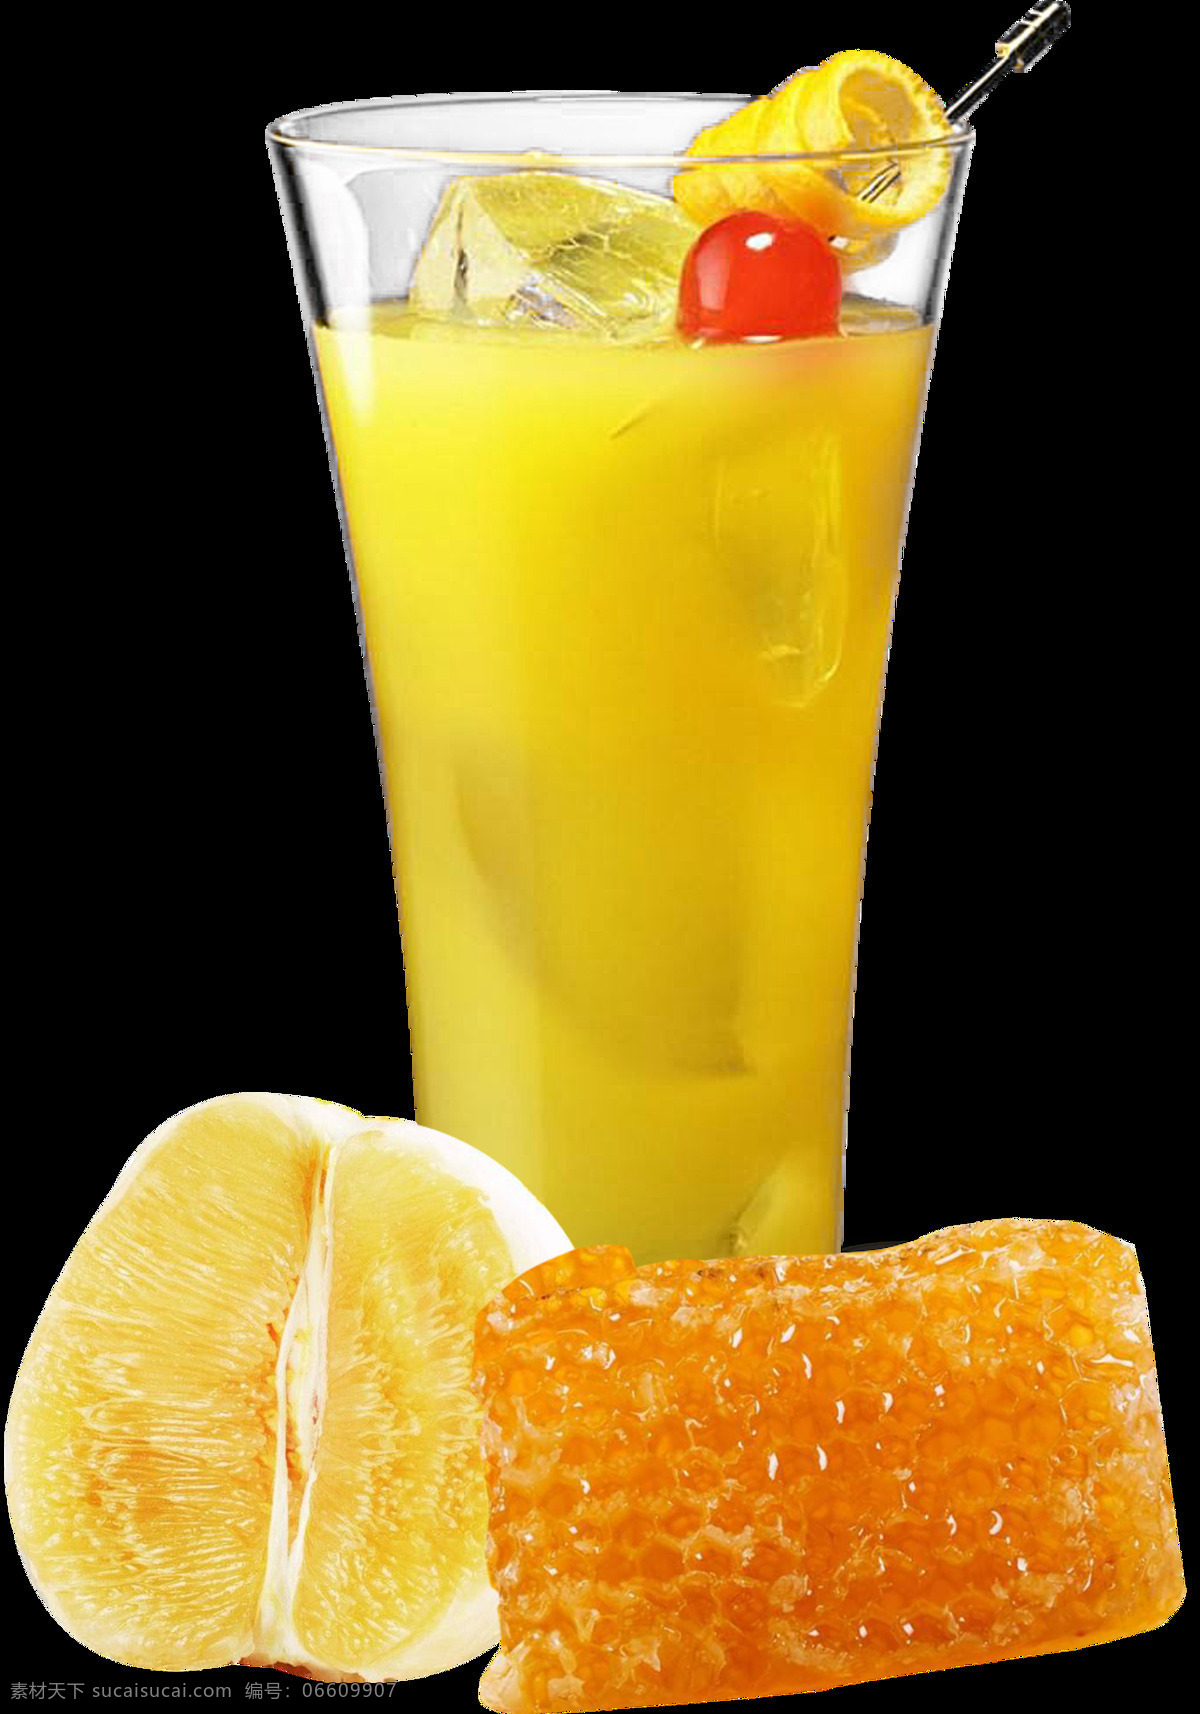 蜂蜜柚子茶 蜂蜜 柚子 茶 柠檬 喝的 饮料 水 菜单菜谱